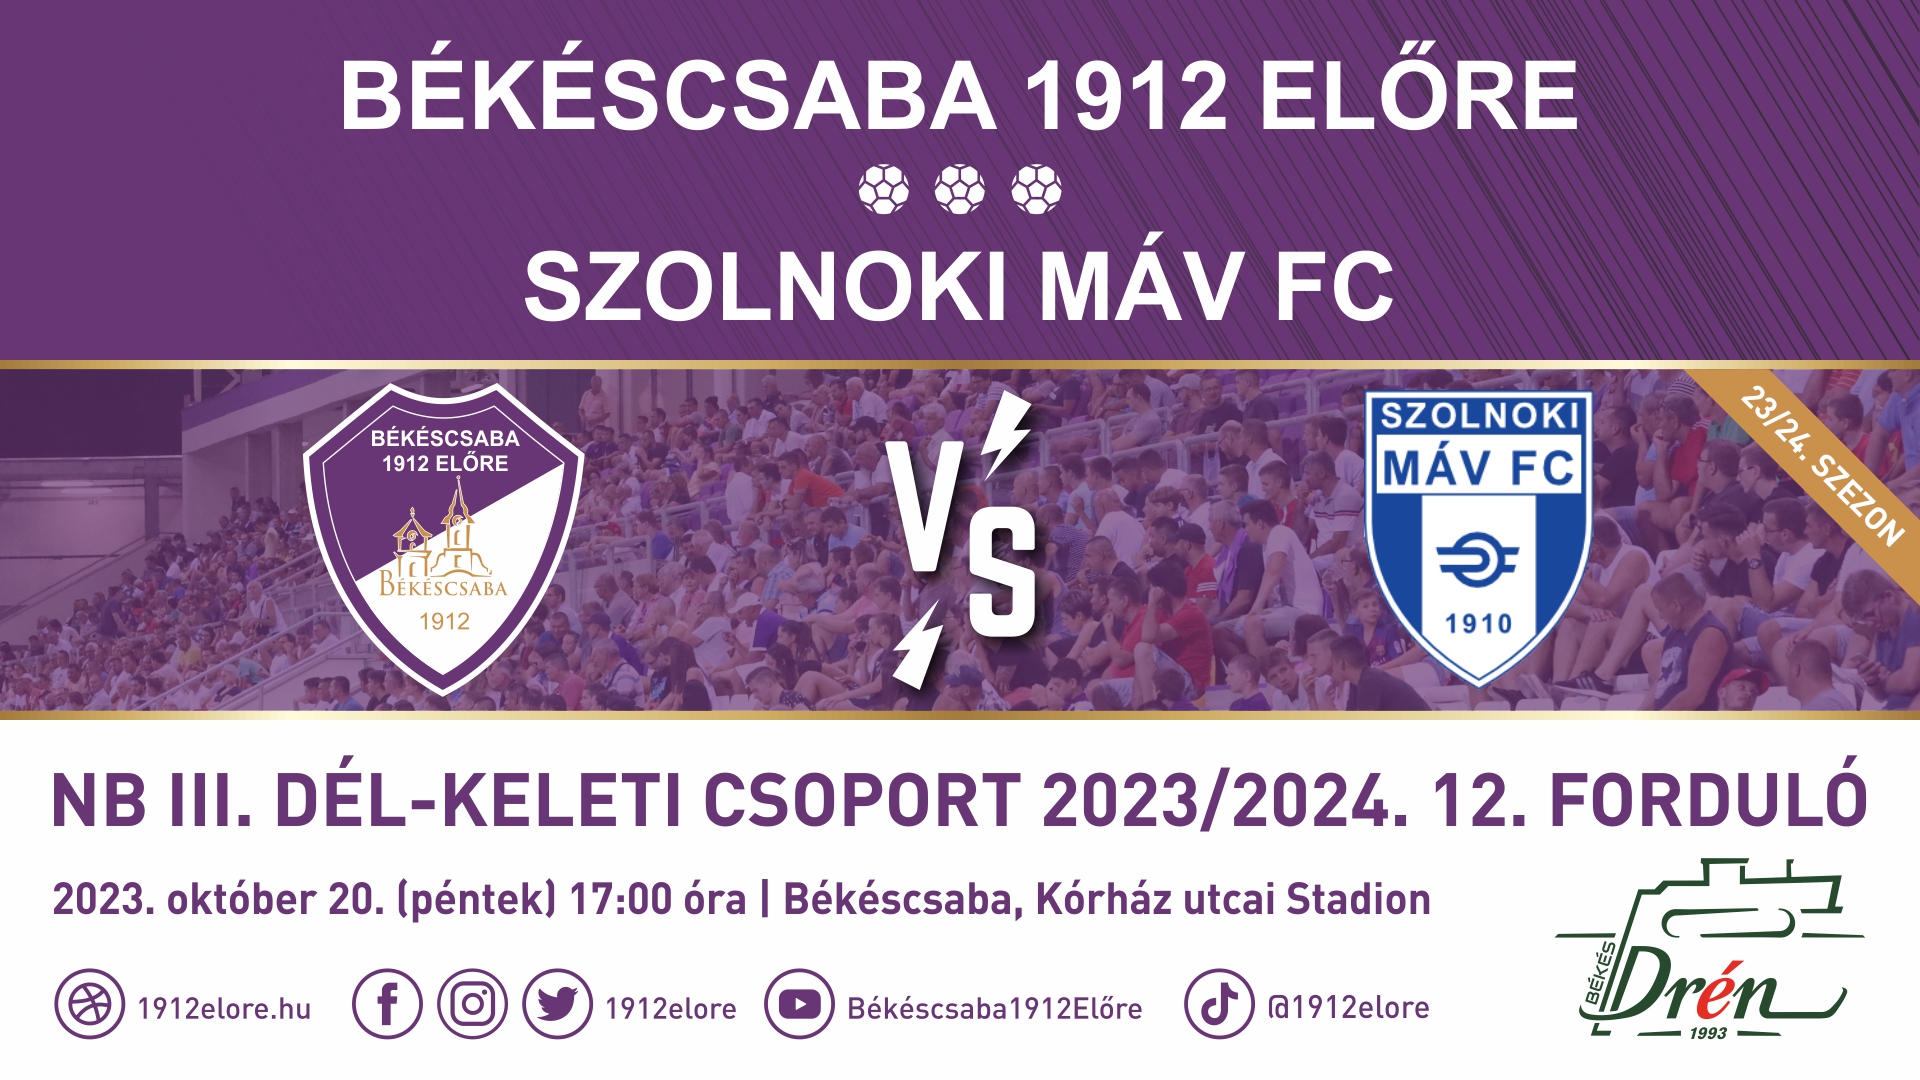 Békéscsaba 1912 Előre - Szolnoki MÁV FC